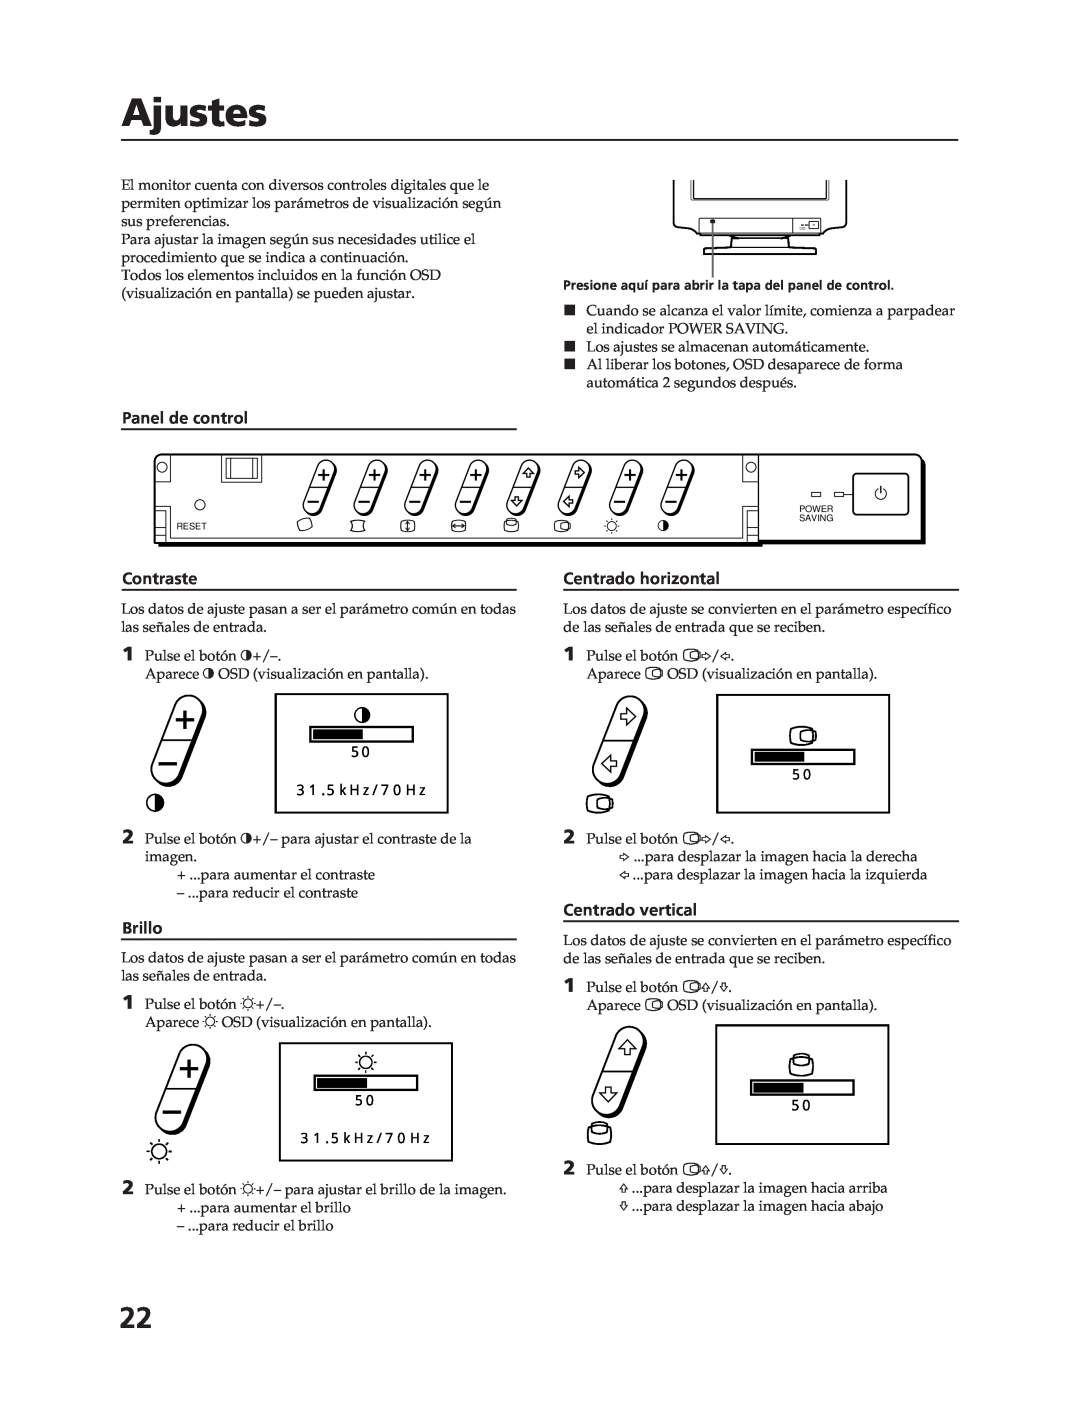 Sony CPD-17F03 manual Ajustes, Panel de control, Brillo, Centrado horizontal, Centrado vertical, Contraste 